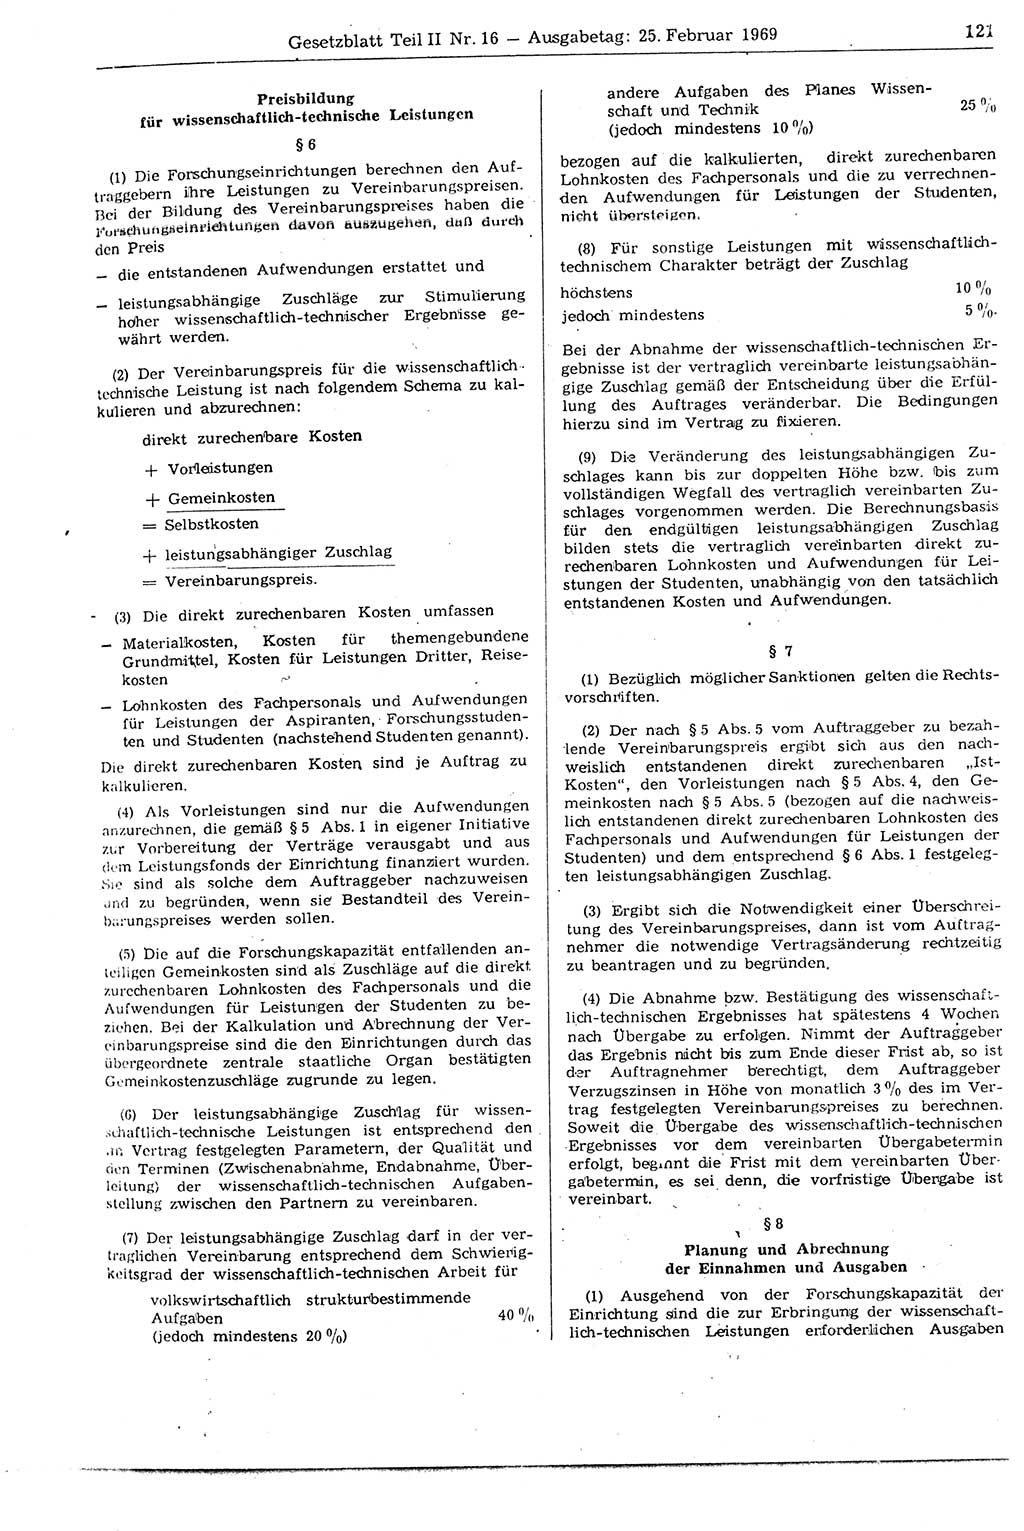 Gesetzblatt (GBl.) der Deutschen Demokratischen Republik (DDR) Teil ⅠⅠ 1969, Seite 121 (GBl. DDR ⅠⅠ 1969, S. 121)